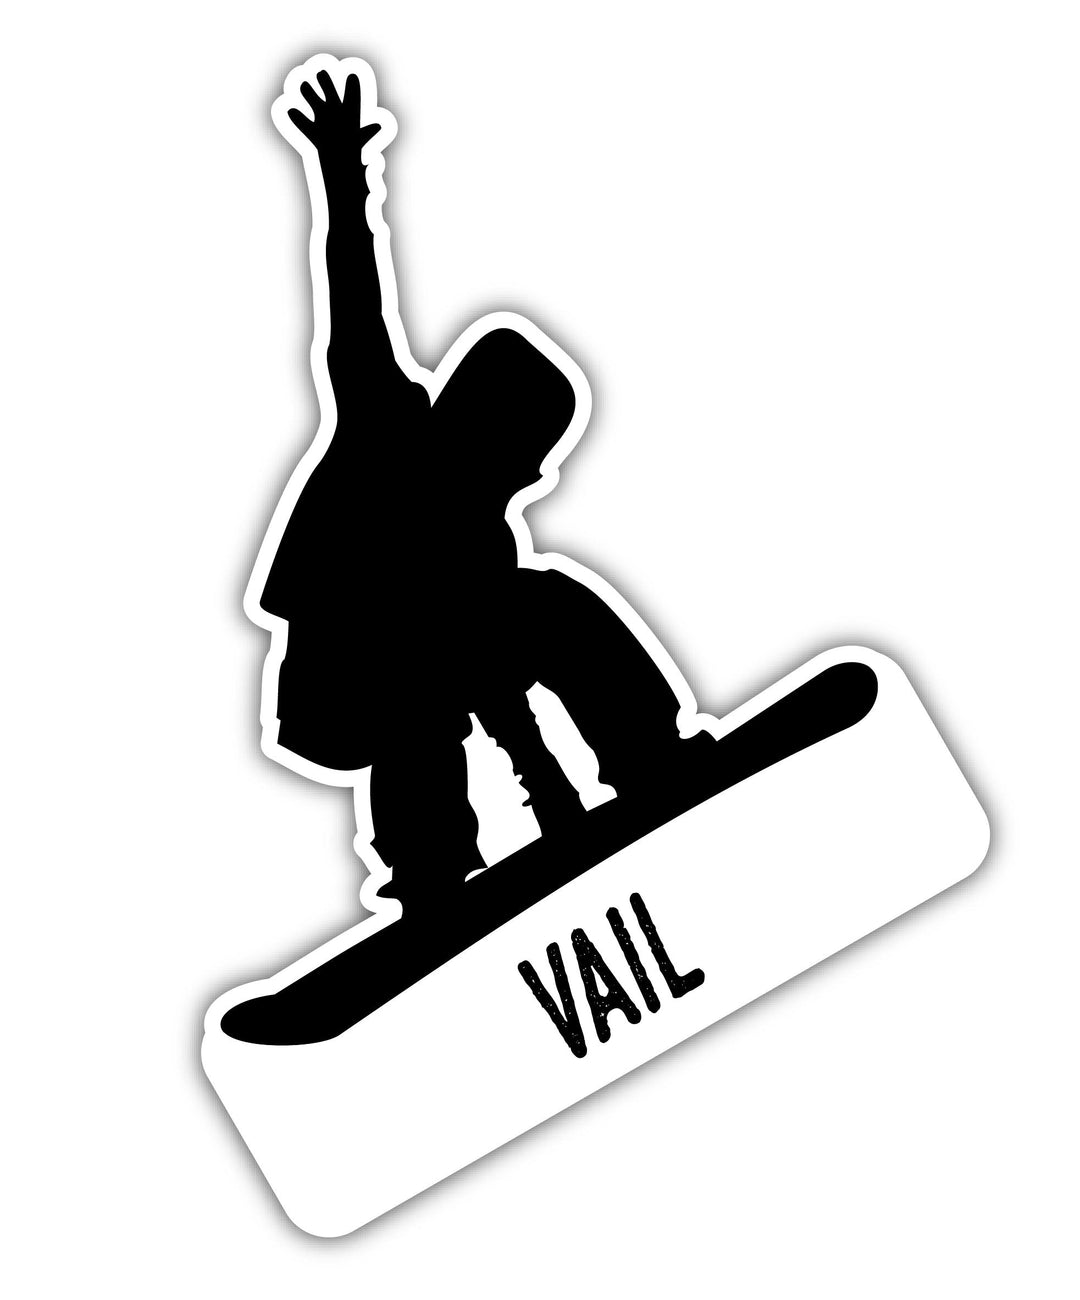 Vail Colorado Ski Adventures Souvenir 4 Inch Vinyl Decal Sticker Board Design Image 1